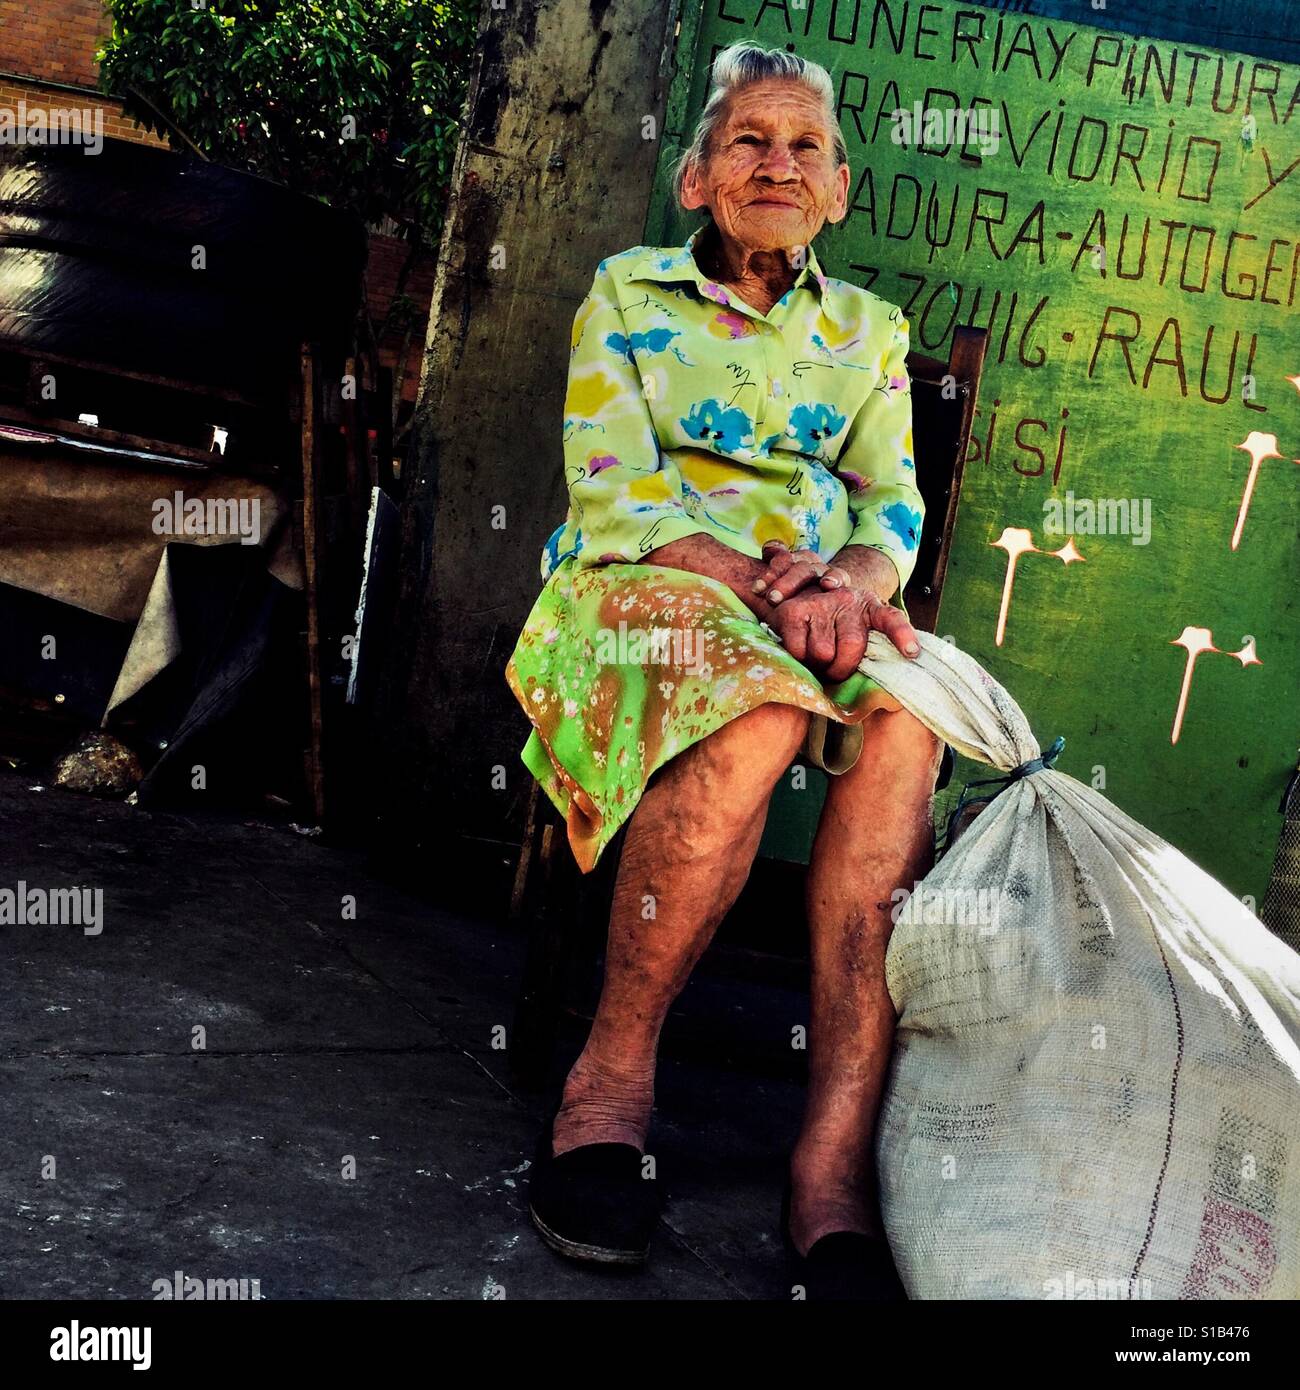 Julia Rosa Cardoña, de 88 años de edad mujer colombiana, posa para una fotografía en la calle del Barrio Triste, un barrio en el centro de Medellín, Colombia, 21 de noviembre de 2016. Foto de stock